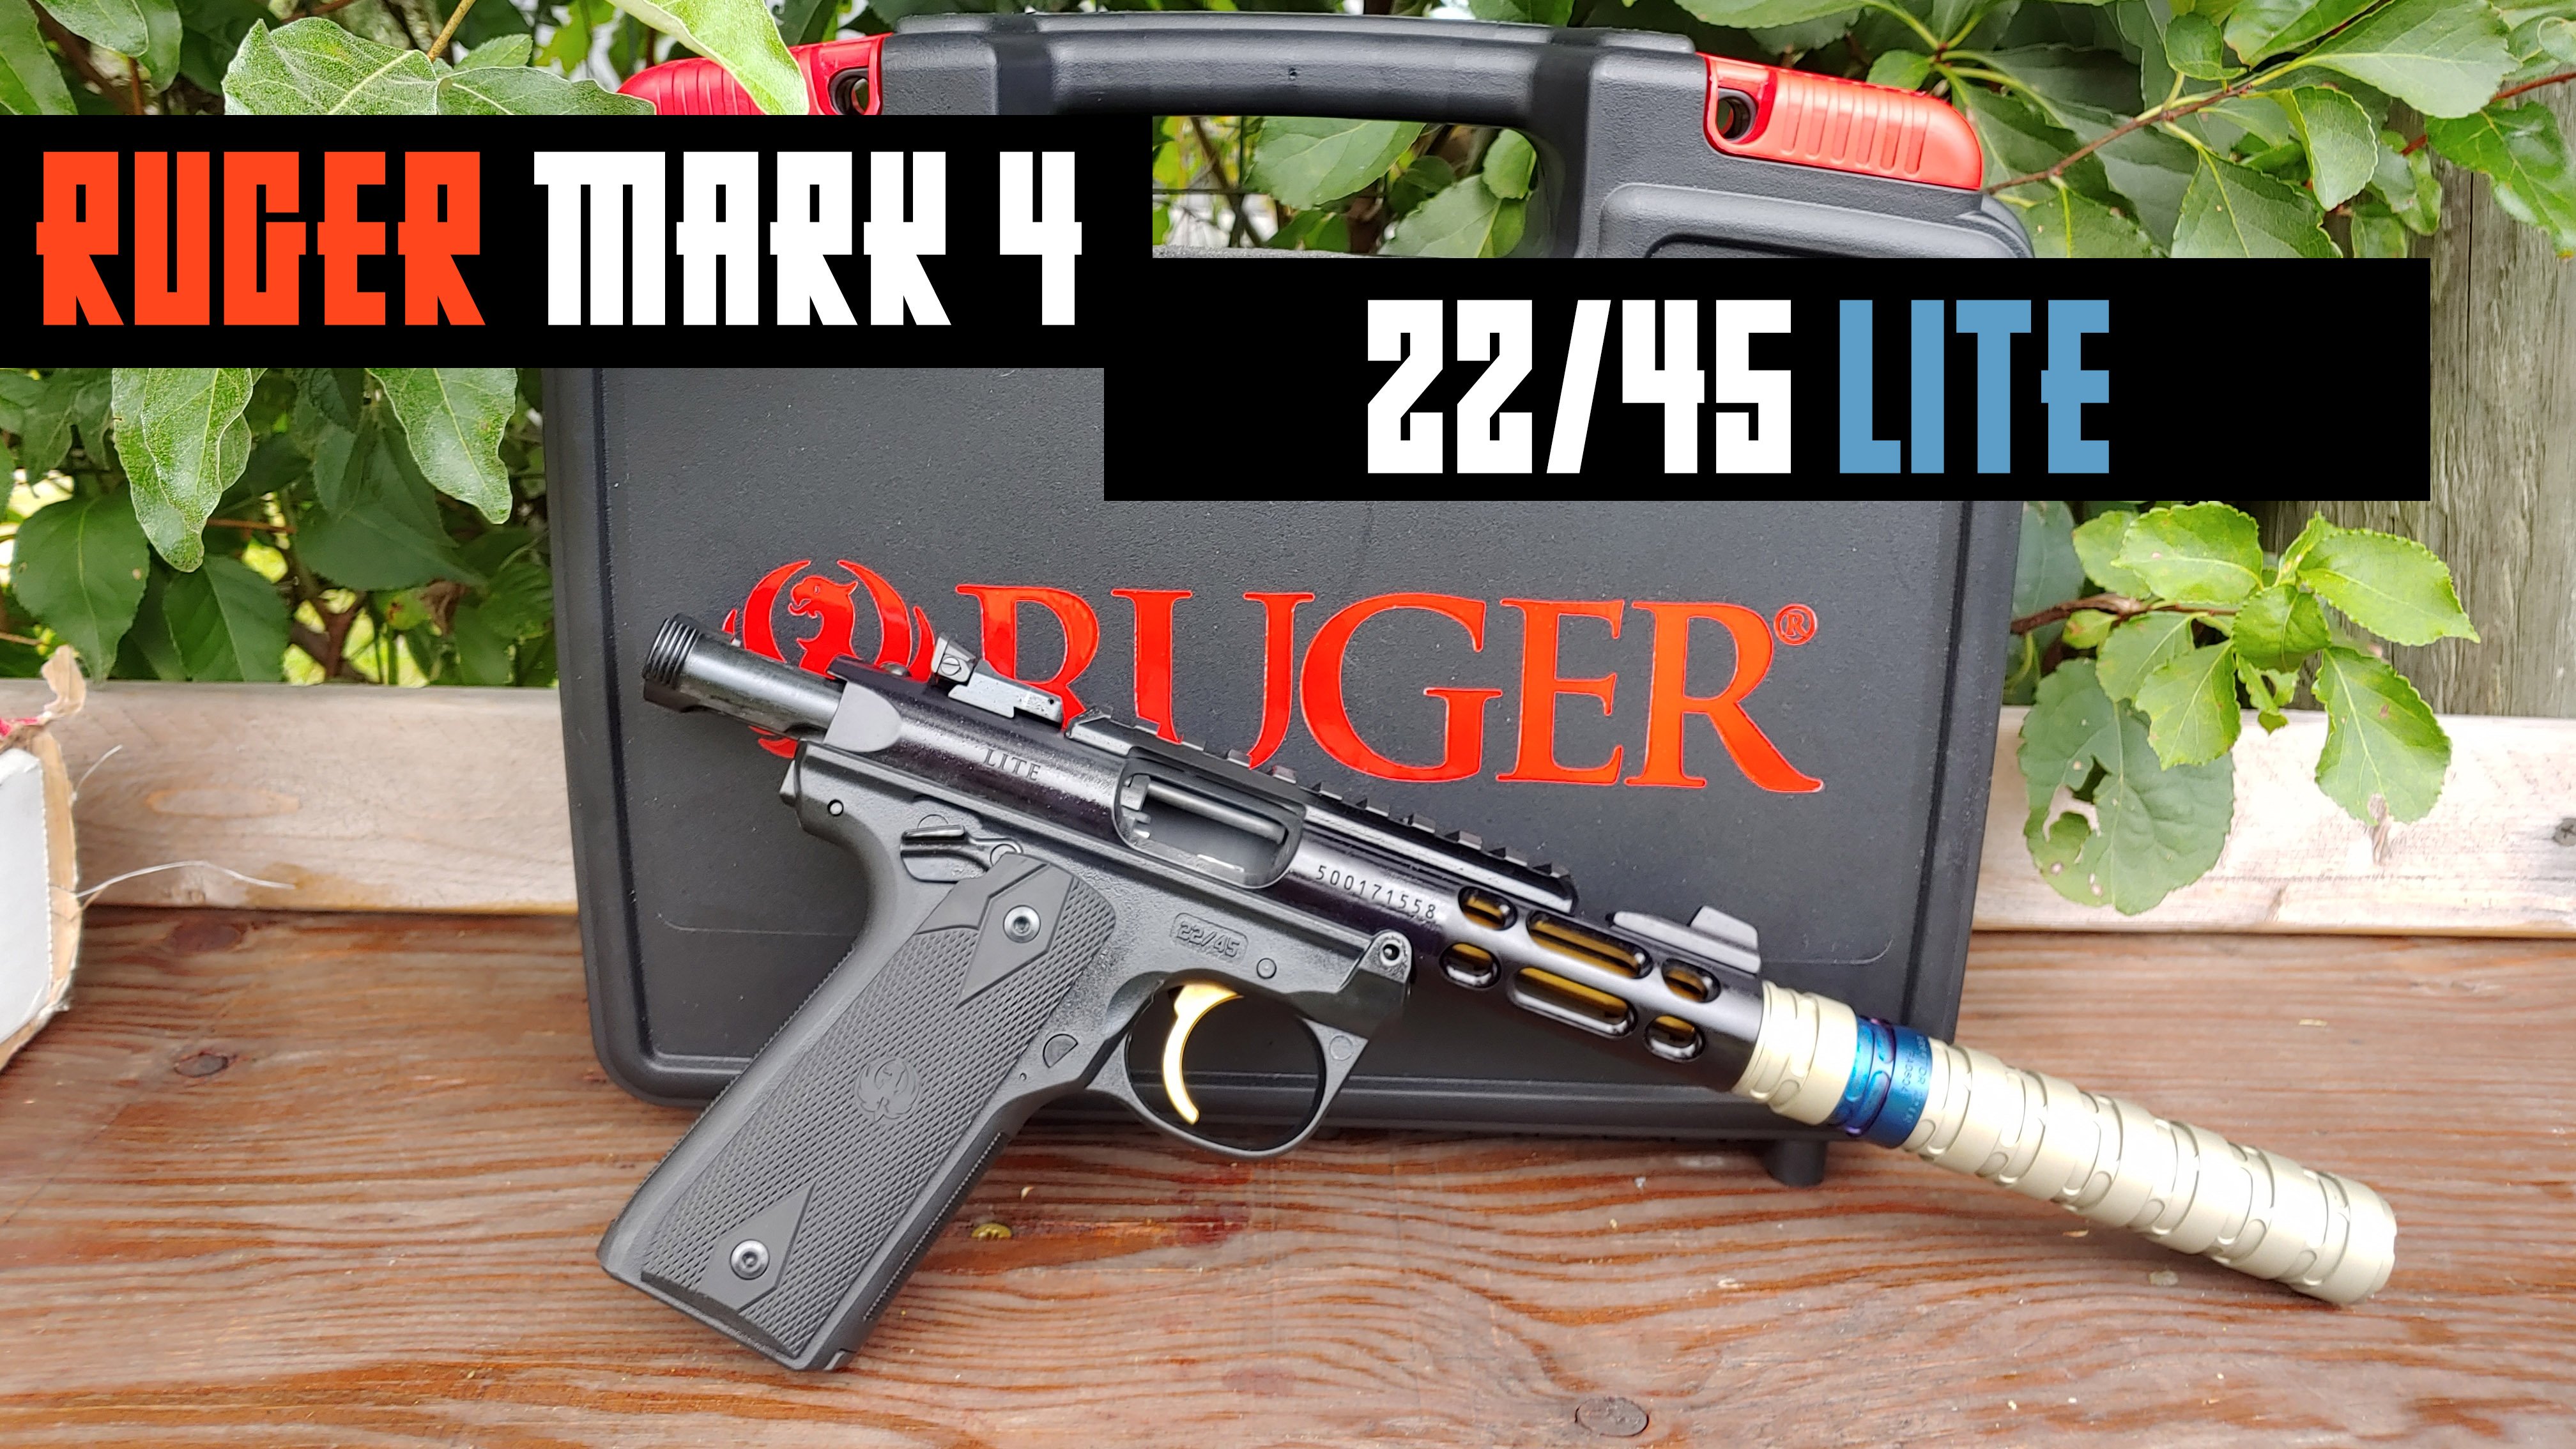 Ruger Mark IV 22/45 Lite - Best All Around Rimfire Pistol?